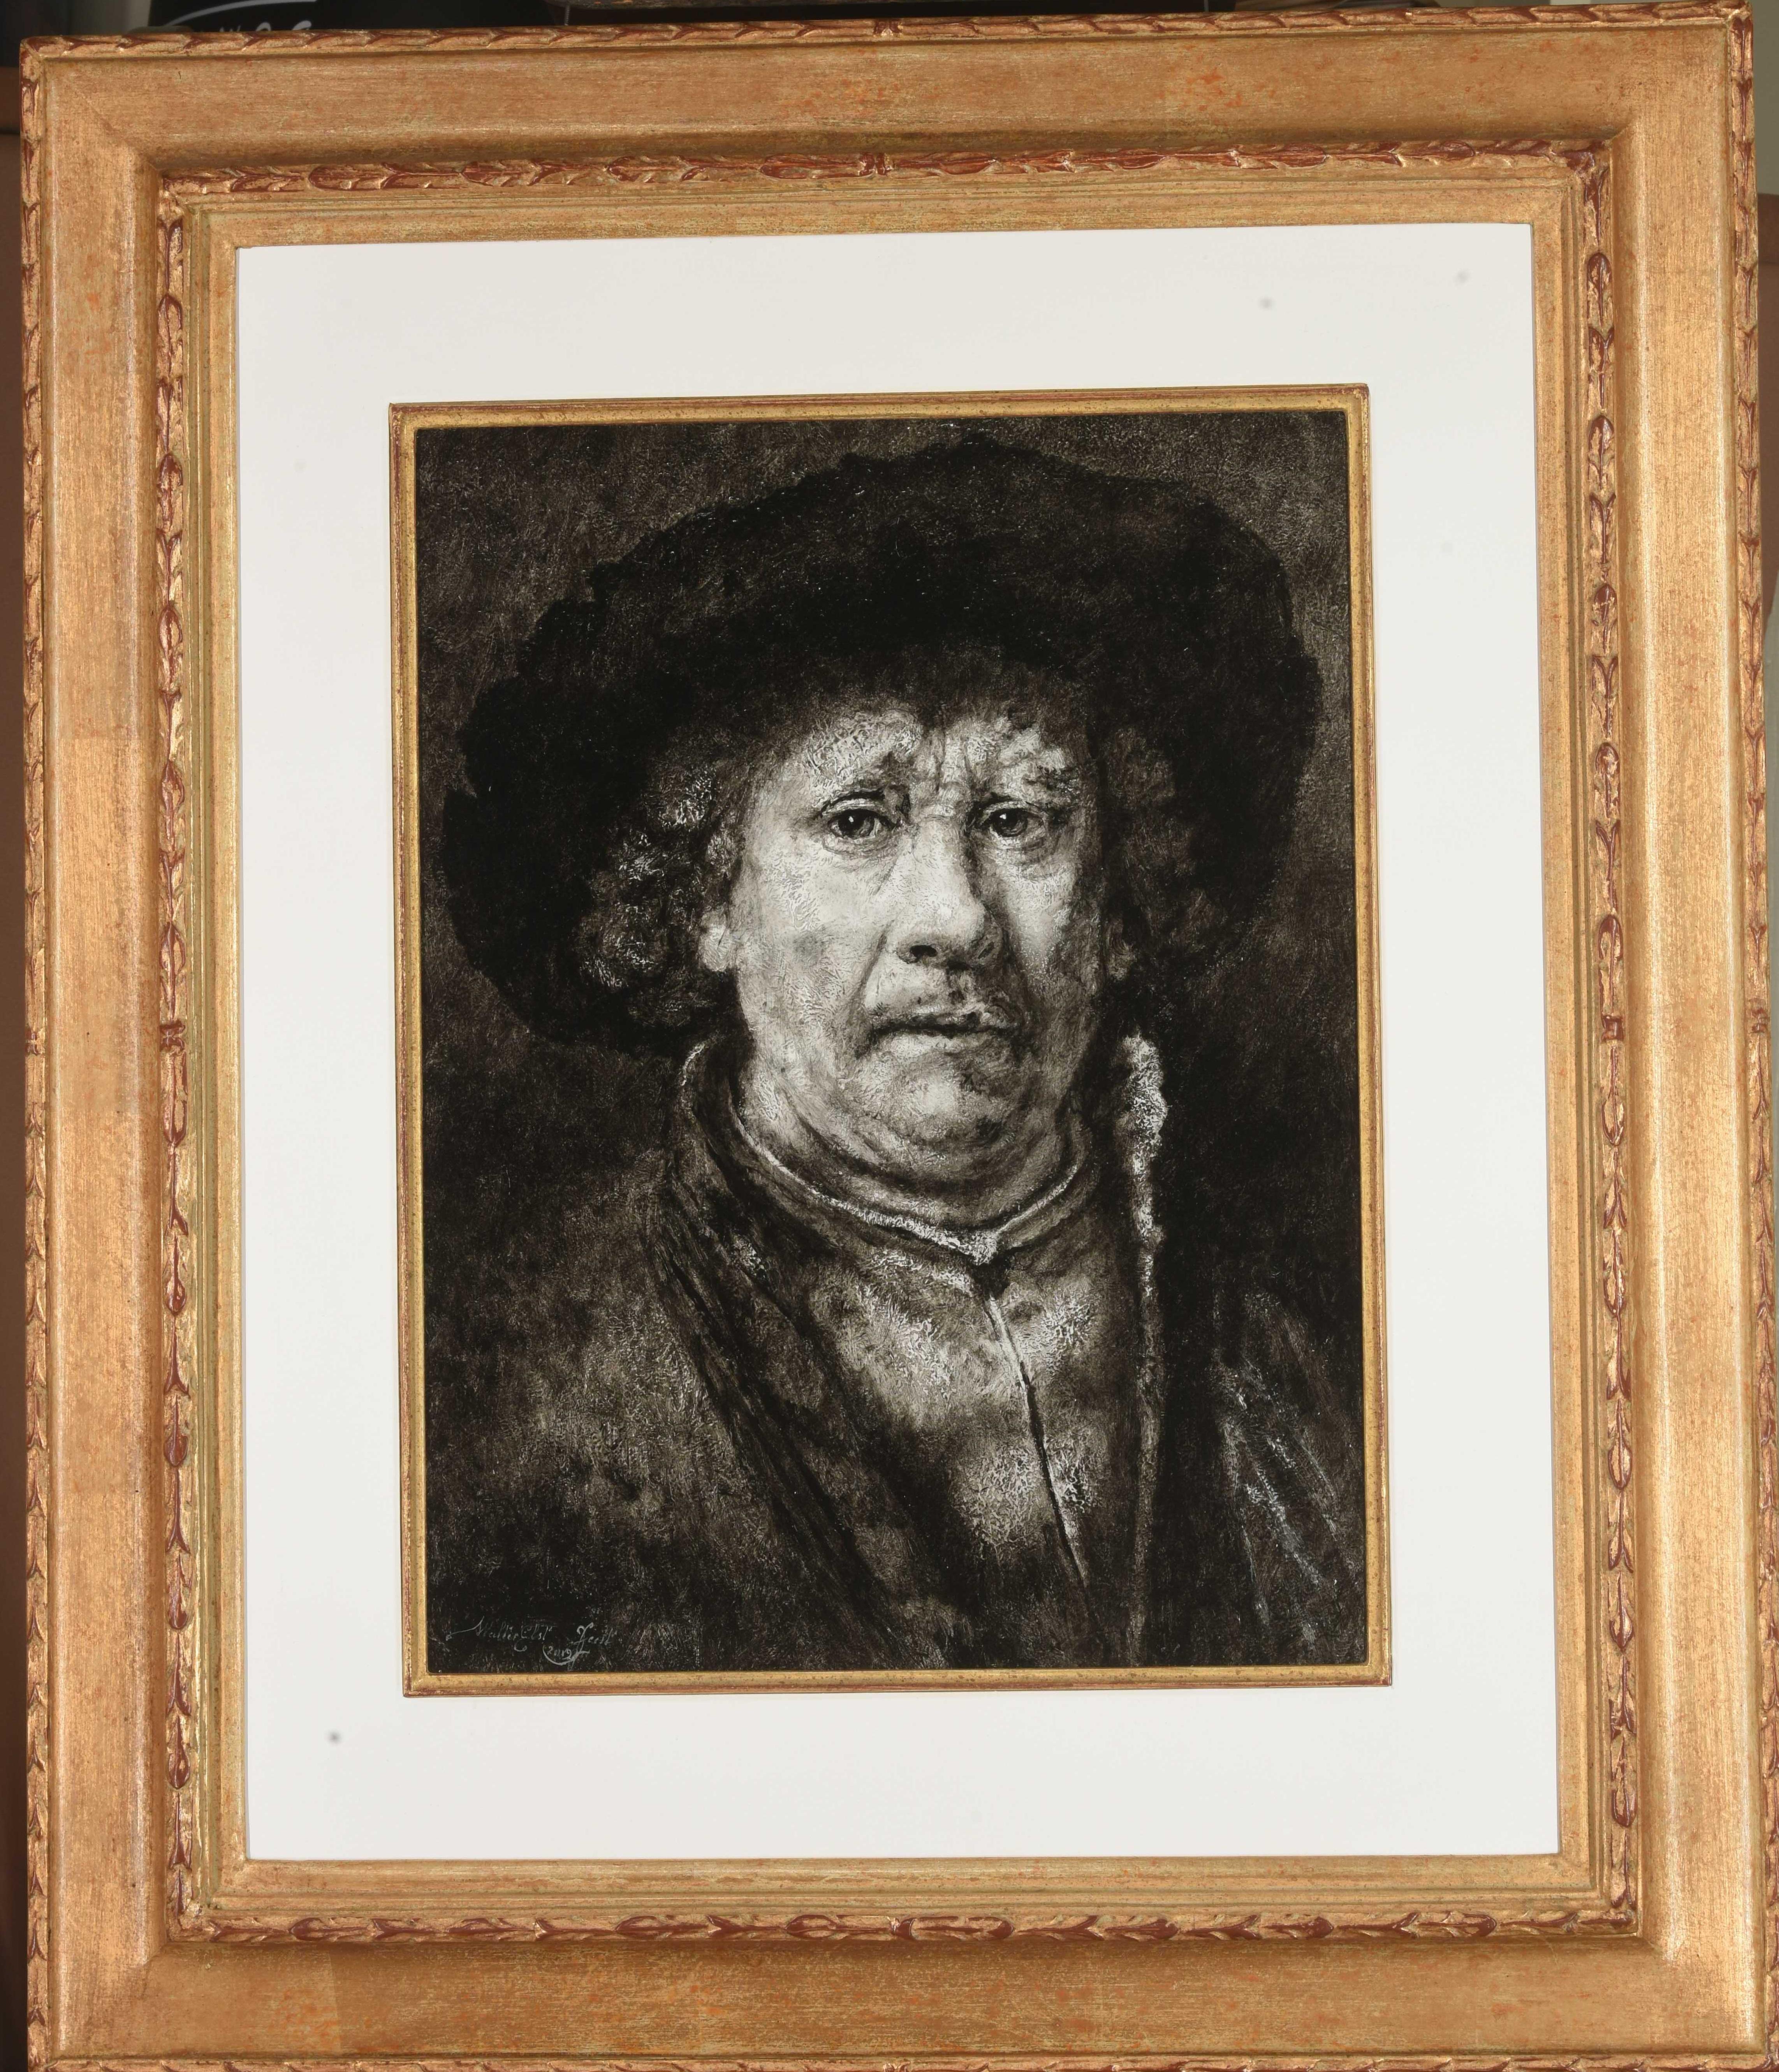 Portrait Painting Walter Elst - Peinture à l'huile sur panneau - Étude - Grisaillestudie - En stock 